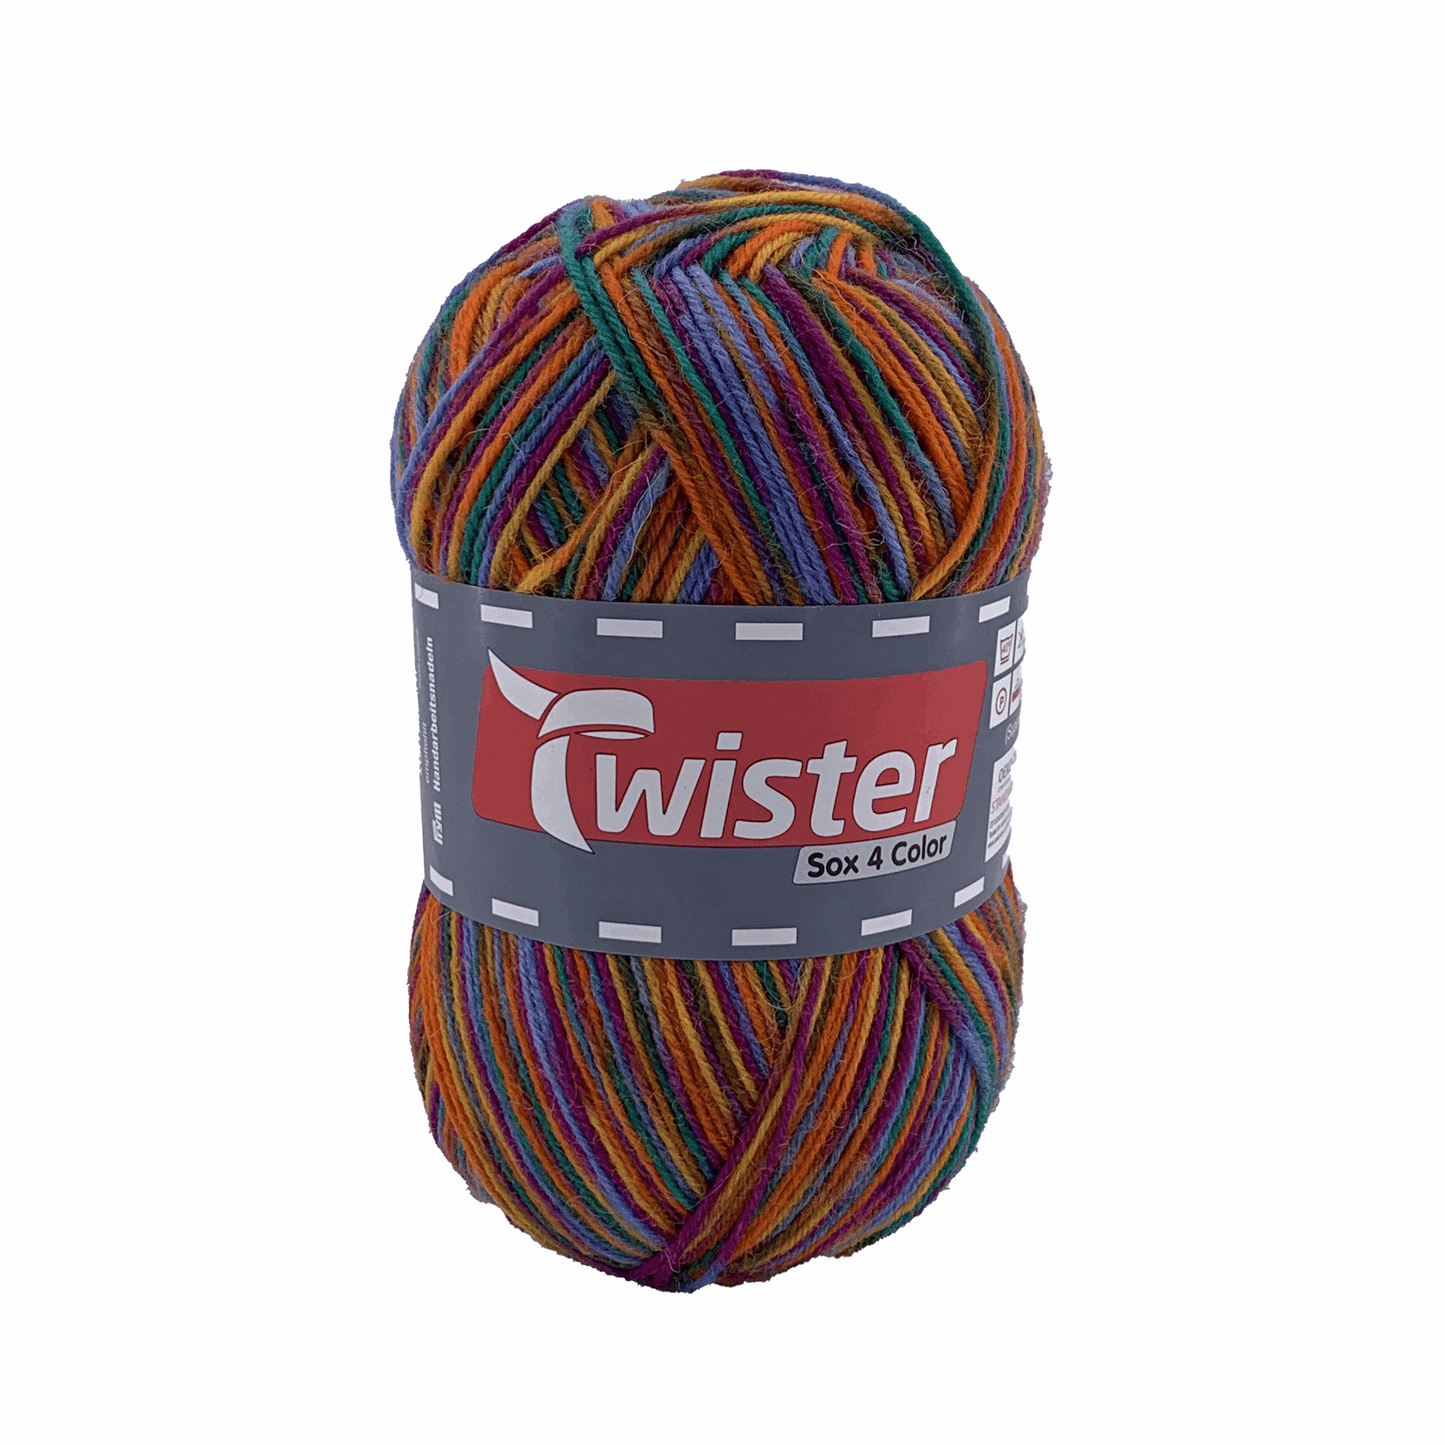 Twister Sox4 Color superwash, rainbow multi, 98306, color 188